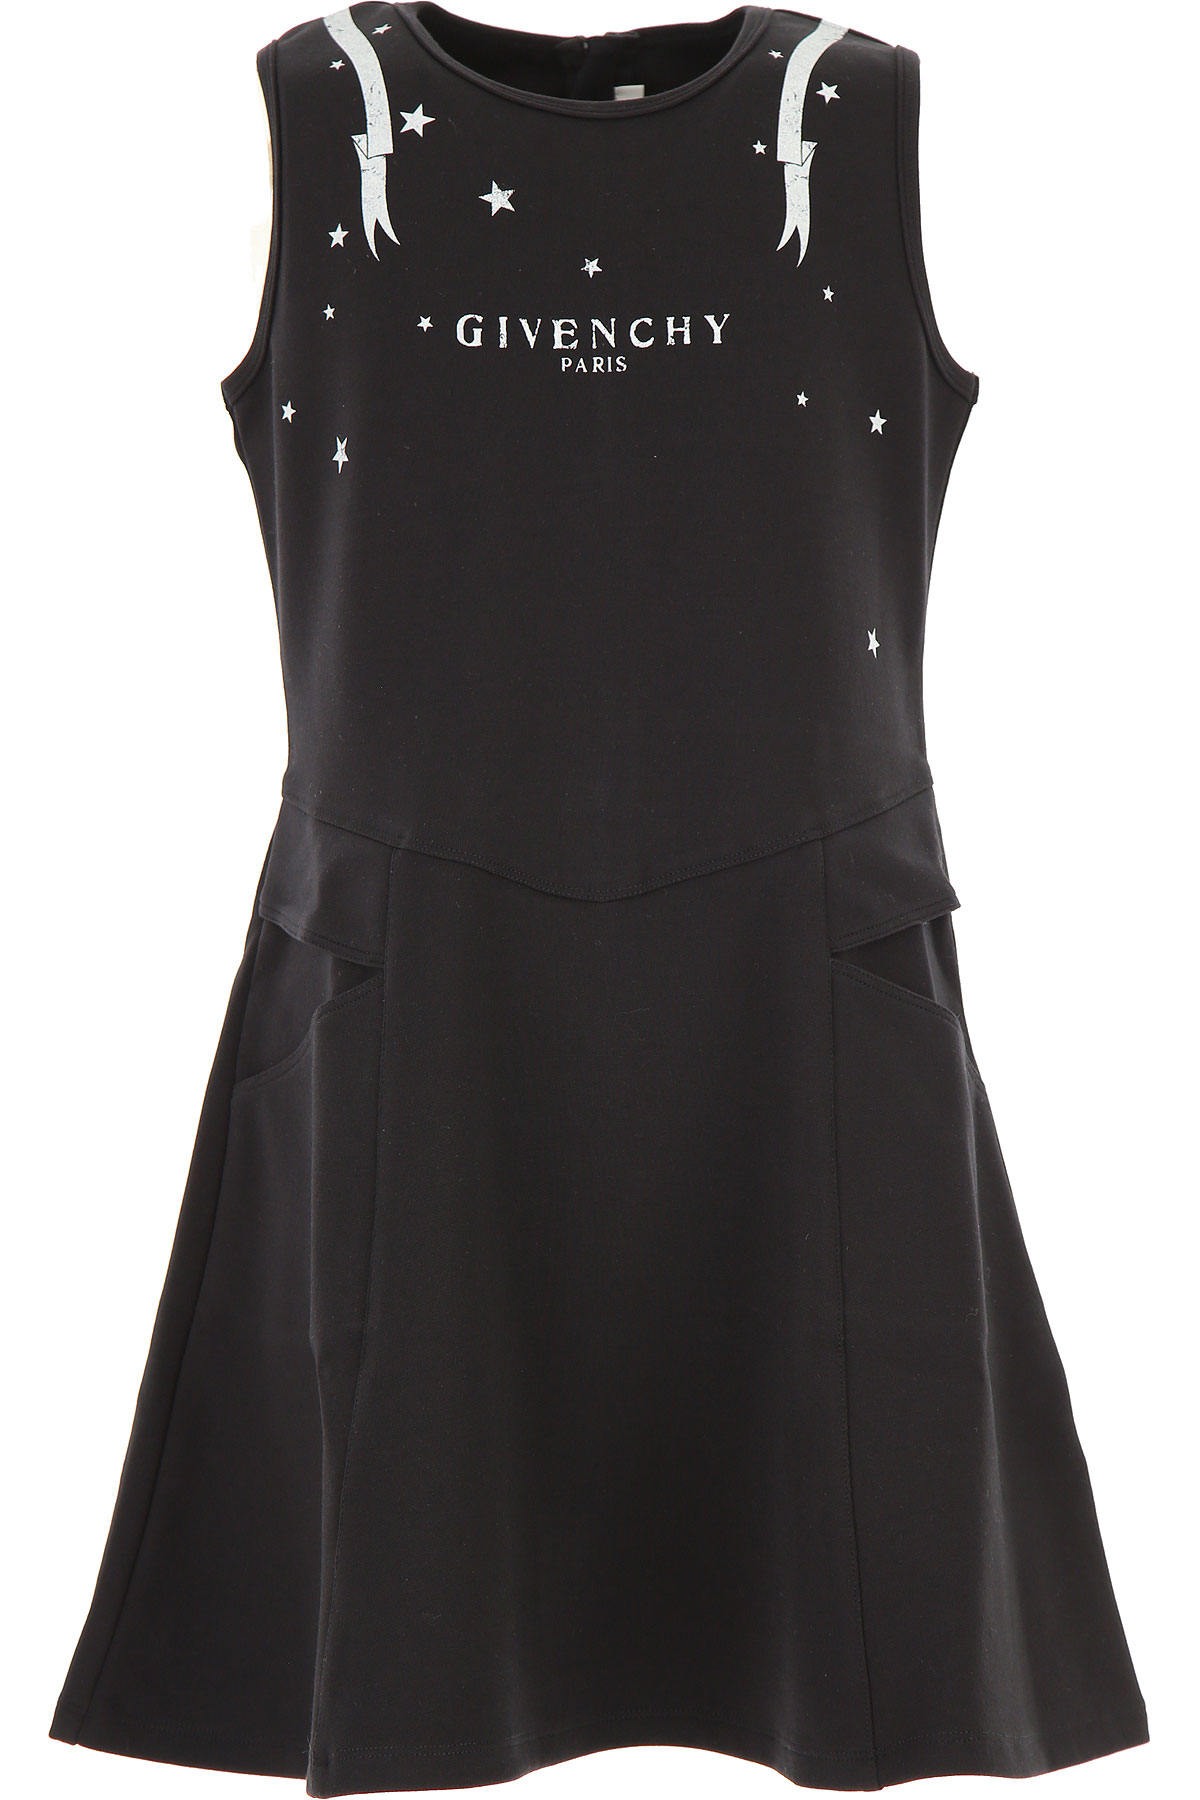 Givenchy Kleid für Mädchen Günstig im Sale, Schwarz, Terracotto-Fliesen, 2017, 10Y 4Y 6Y